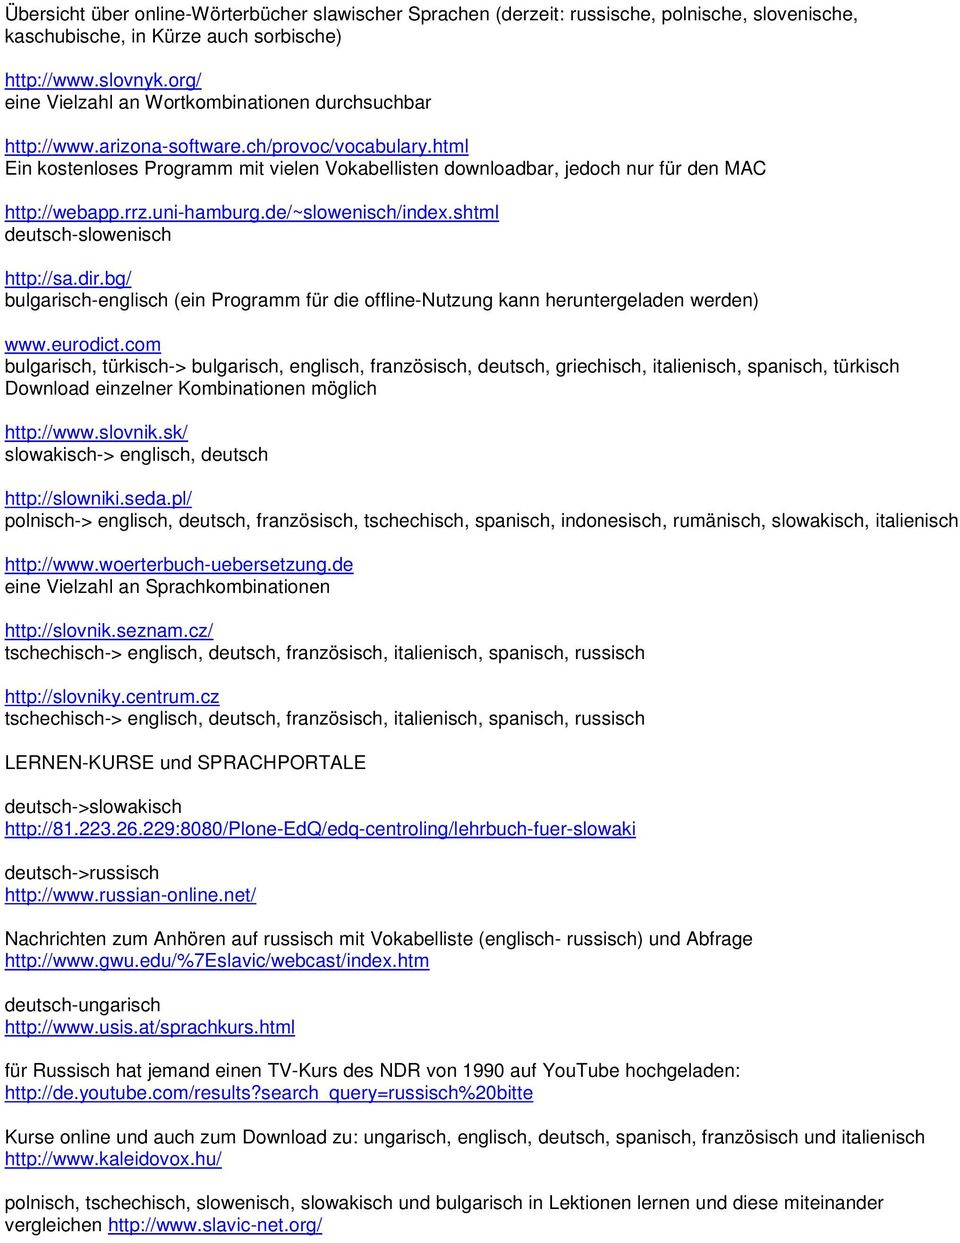 html Ein kostenloses Programm mit vielen Vokabellisten downloadbar, jedoch nur für den MAC http://webapp.rrz.uni-hamburg.de/~slowenisch/index.shtml deutsch-slowenisch http://sa.dir.